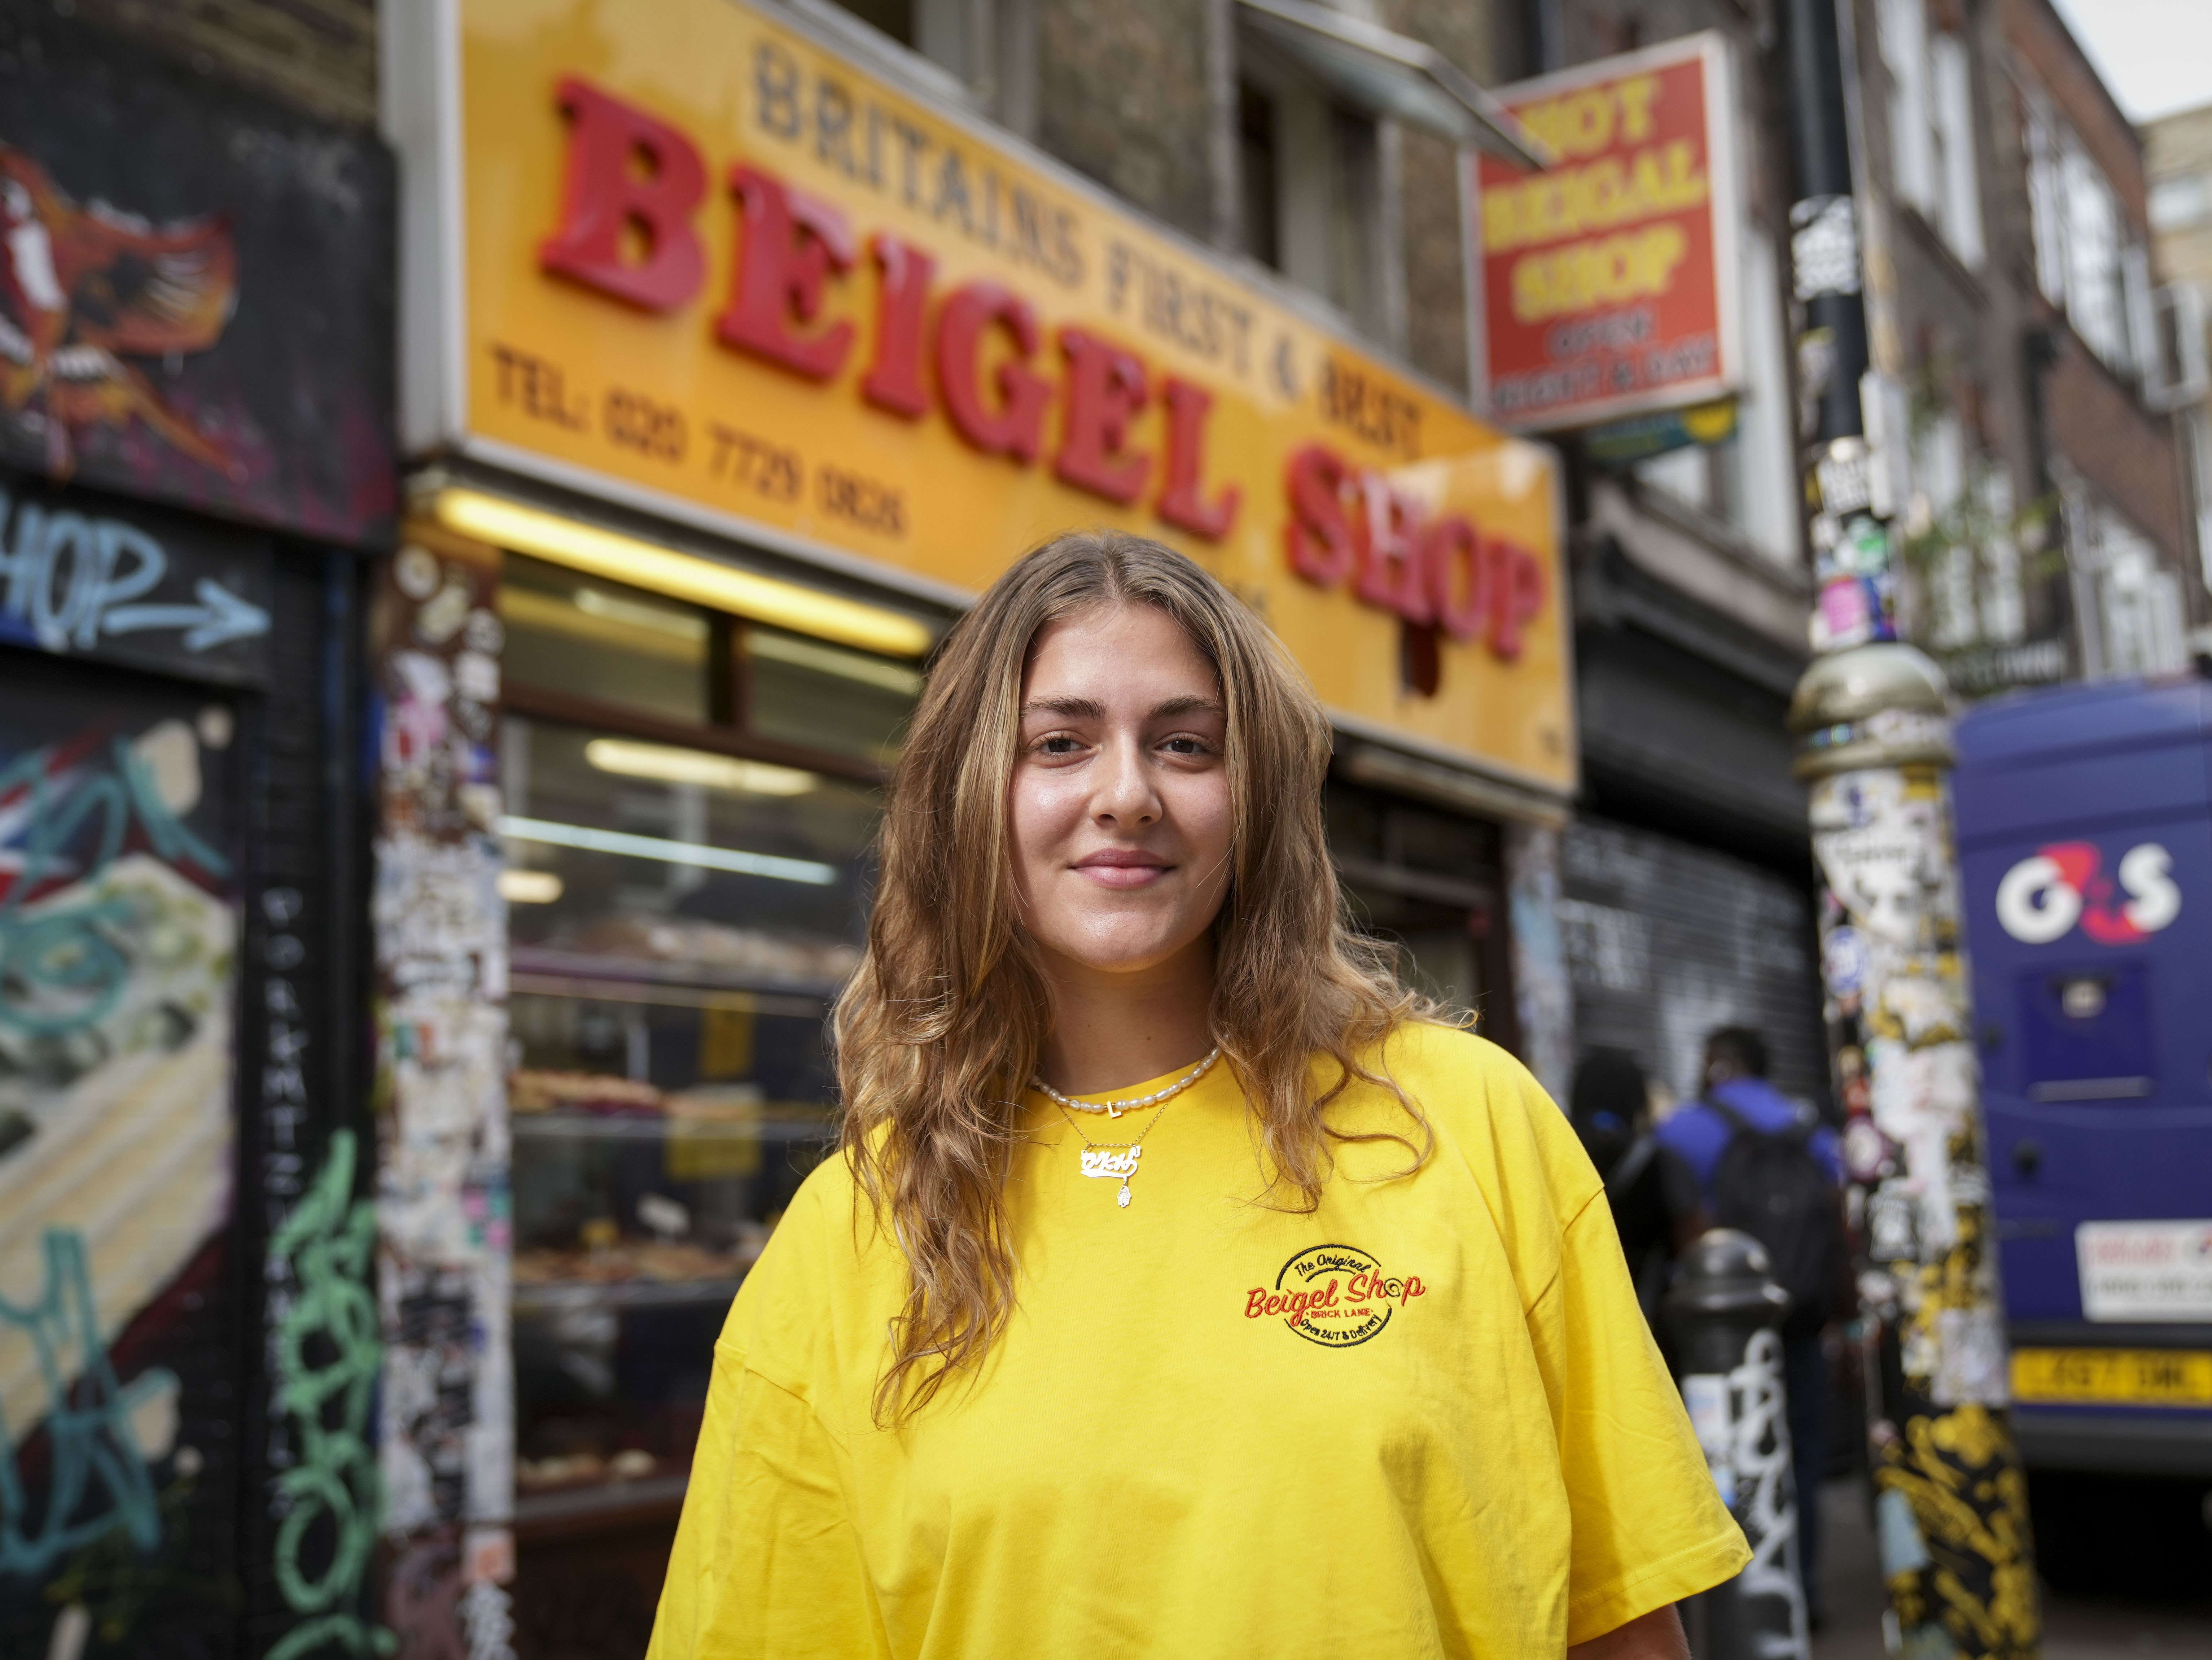 Louise Zelman, 21, vom Beigel Shop in der Brick Lane